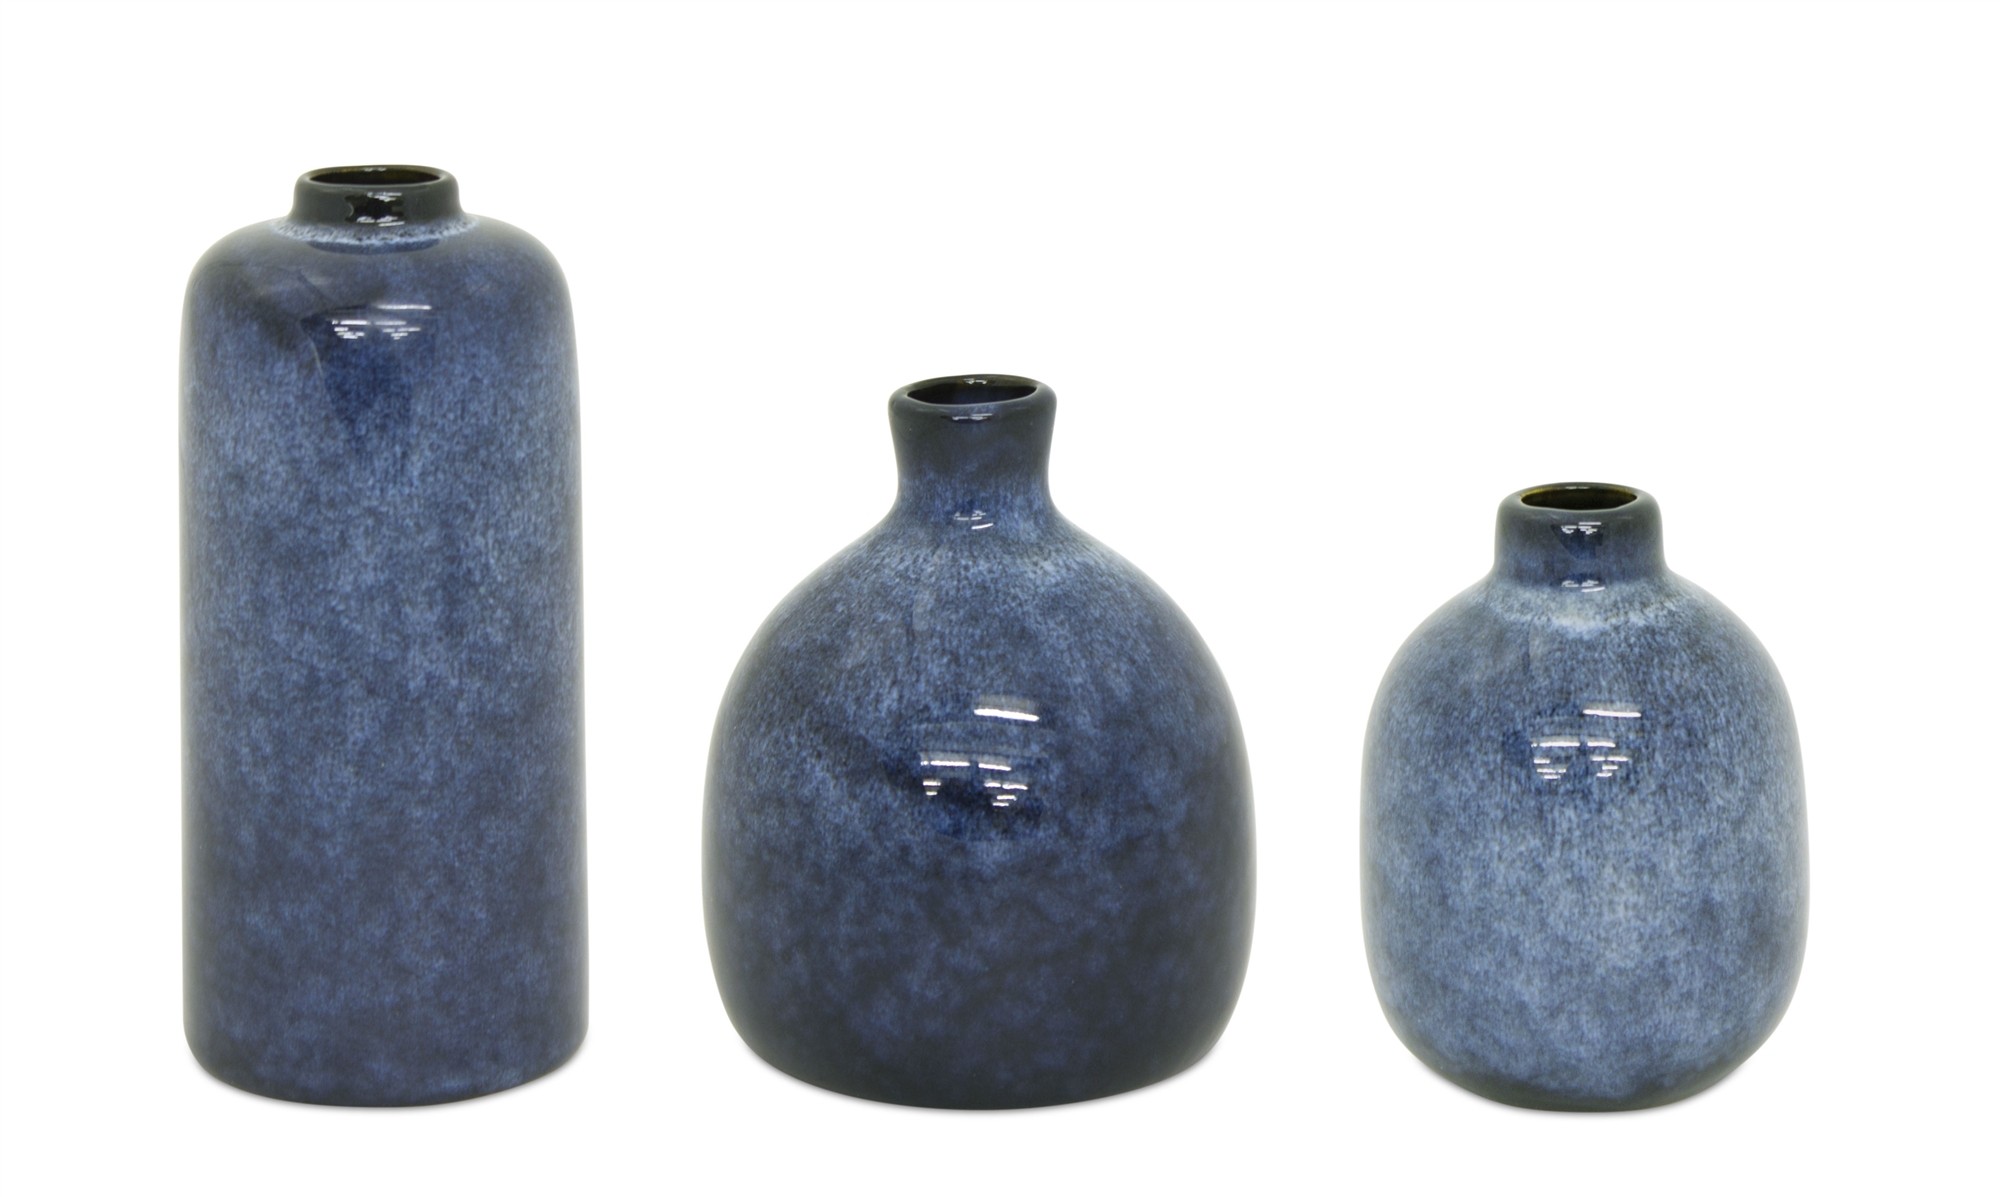 Mini Vase (Set of 3) 4.25"H, 4.75"H, 6.25"H Clay